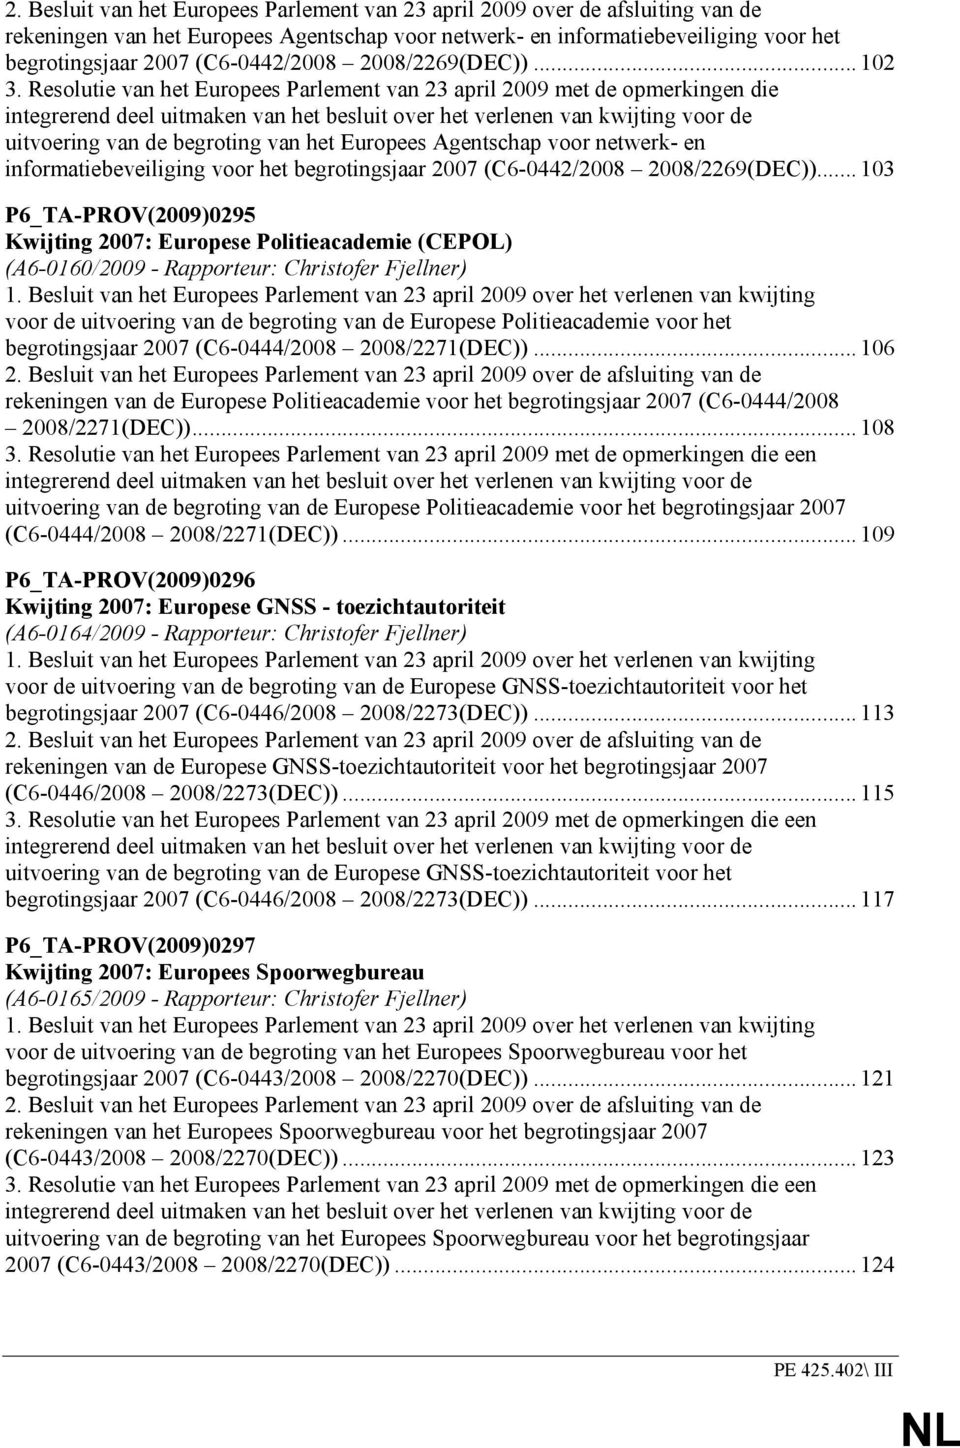 Resolutie van het Europees Parlement van 23 april 2009 met de opmerkingen die integrerend deel uitmaken van het besluit over het verlenen van kwijting voor de uitvoering van de begroting van het